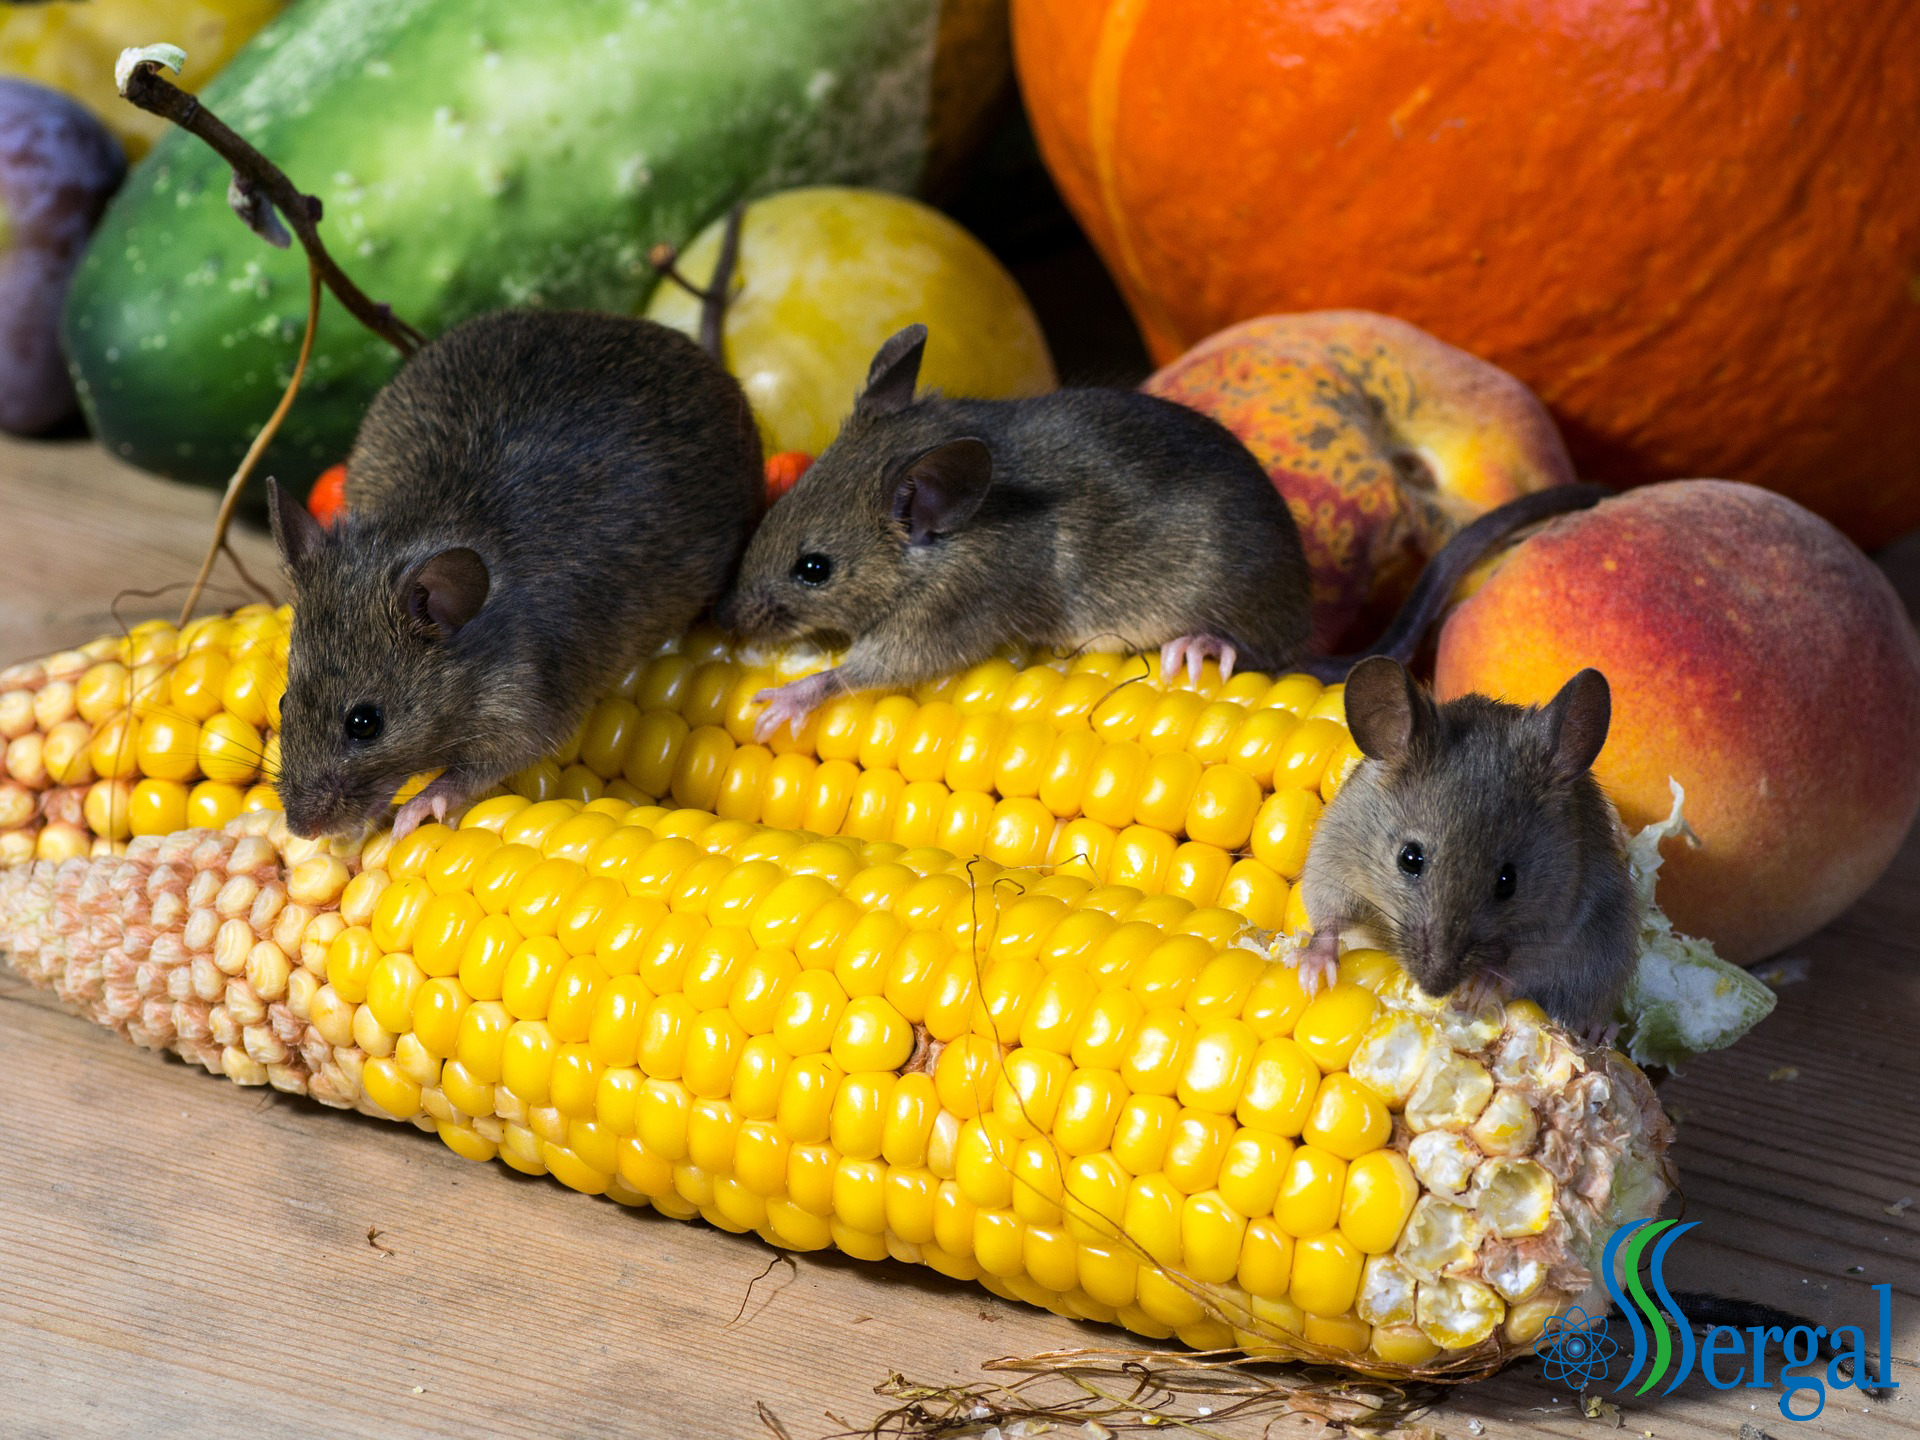 Plaga de ratones en casa: te ayudamos a combatirlos | SERGAL